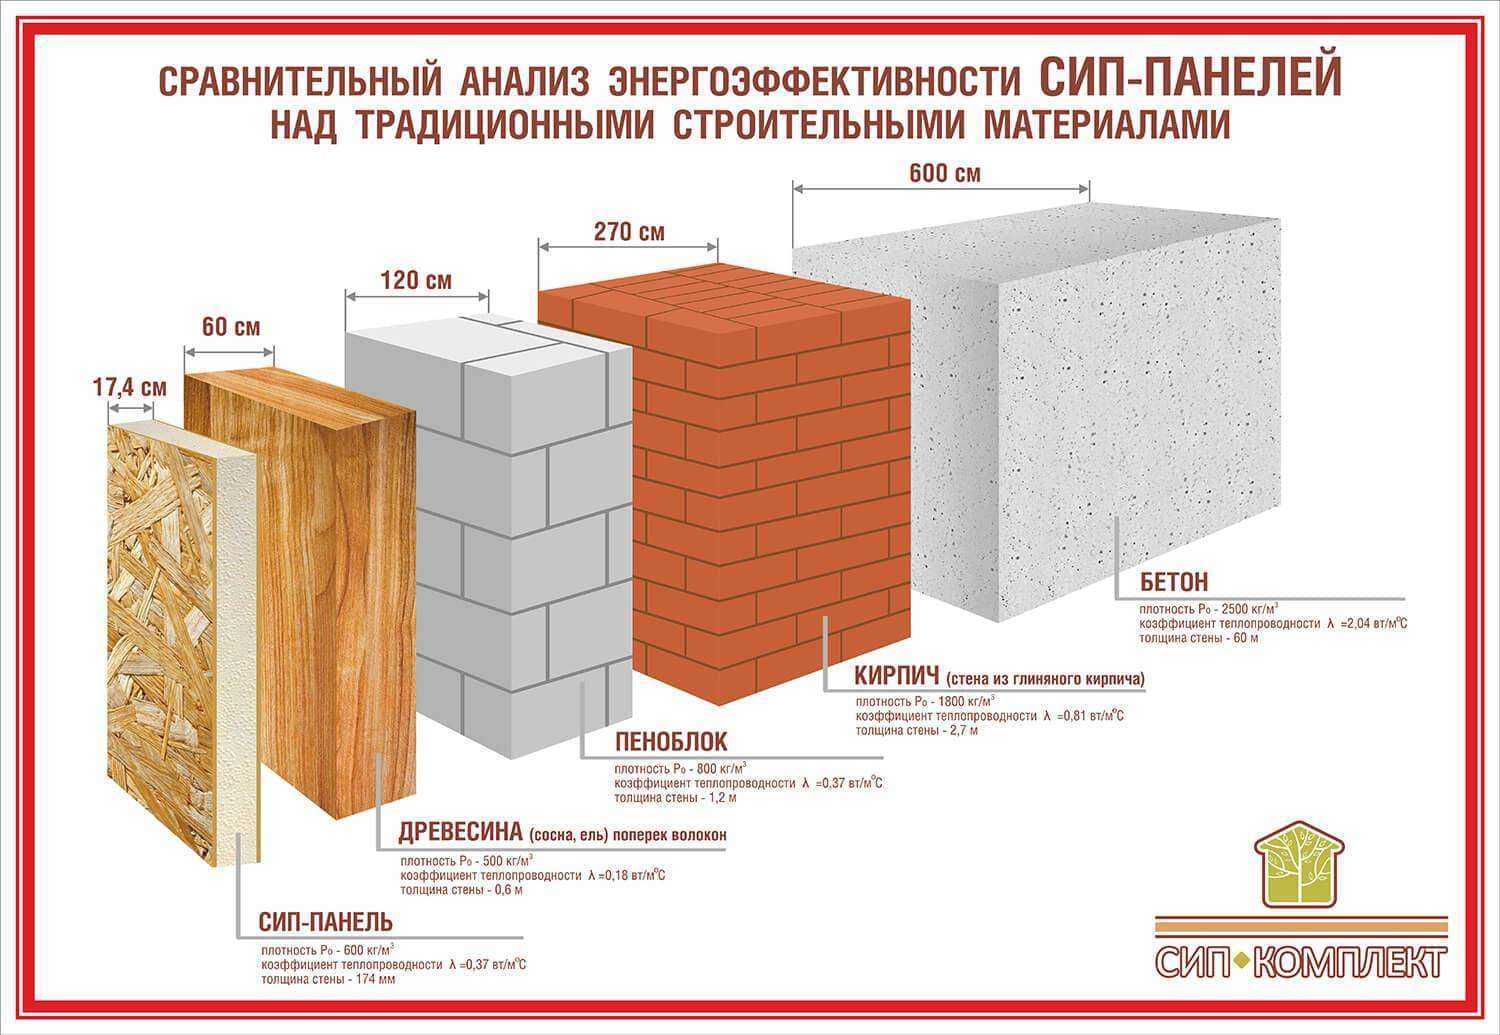 Технология возведения стен из пеноблоков - блог о строительстве